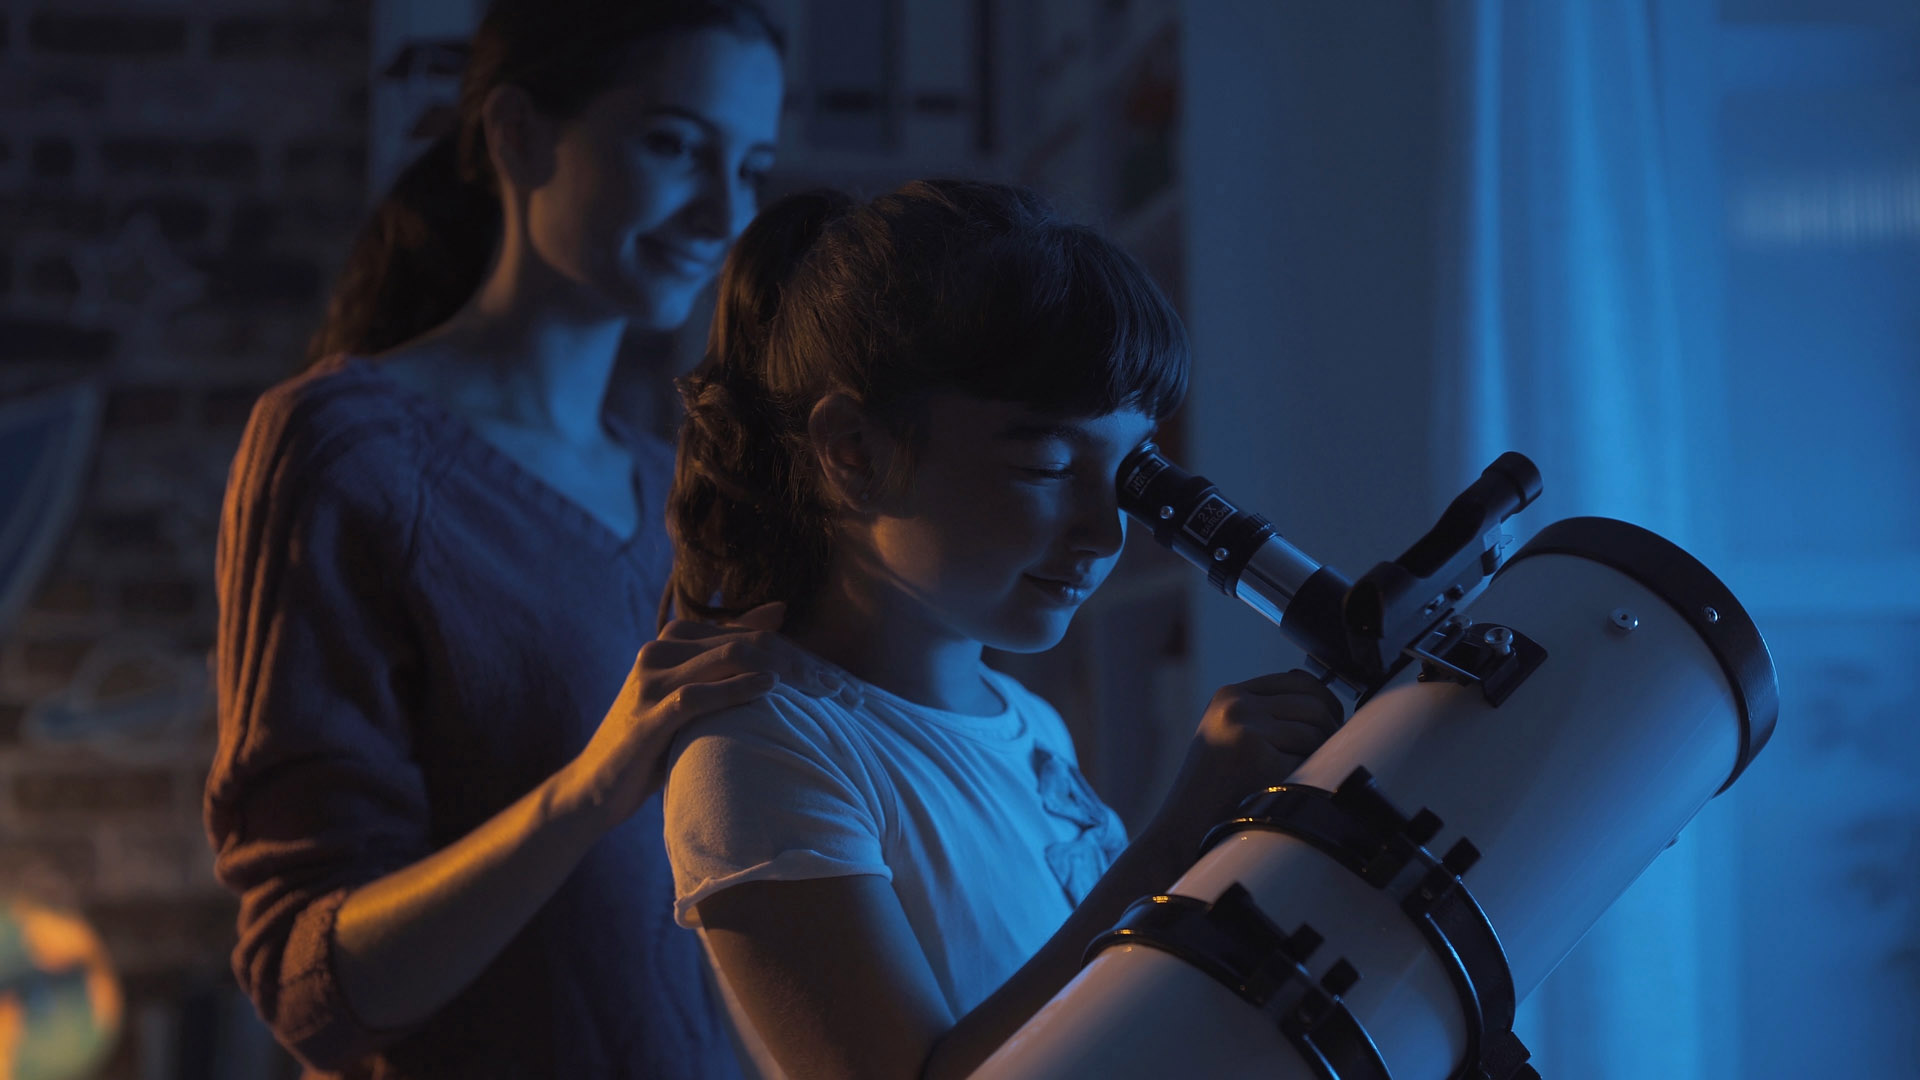 Mond, Planeten und Sterne zum Anfassen: Mit dem richtigen Teleskop entdecken Kinder und Jugendliche ihre Leidenschaft für die Astronomie. AstroStar/Shutterstock.com